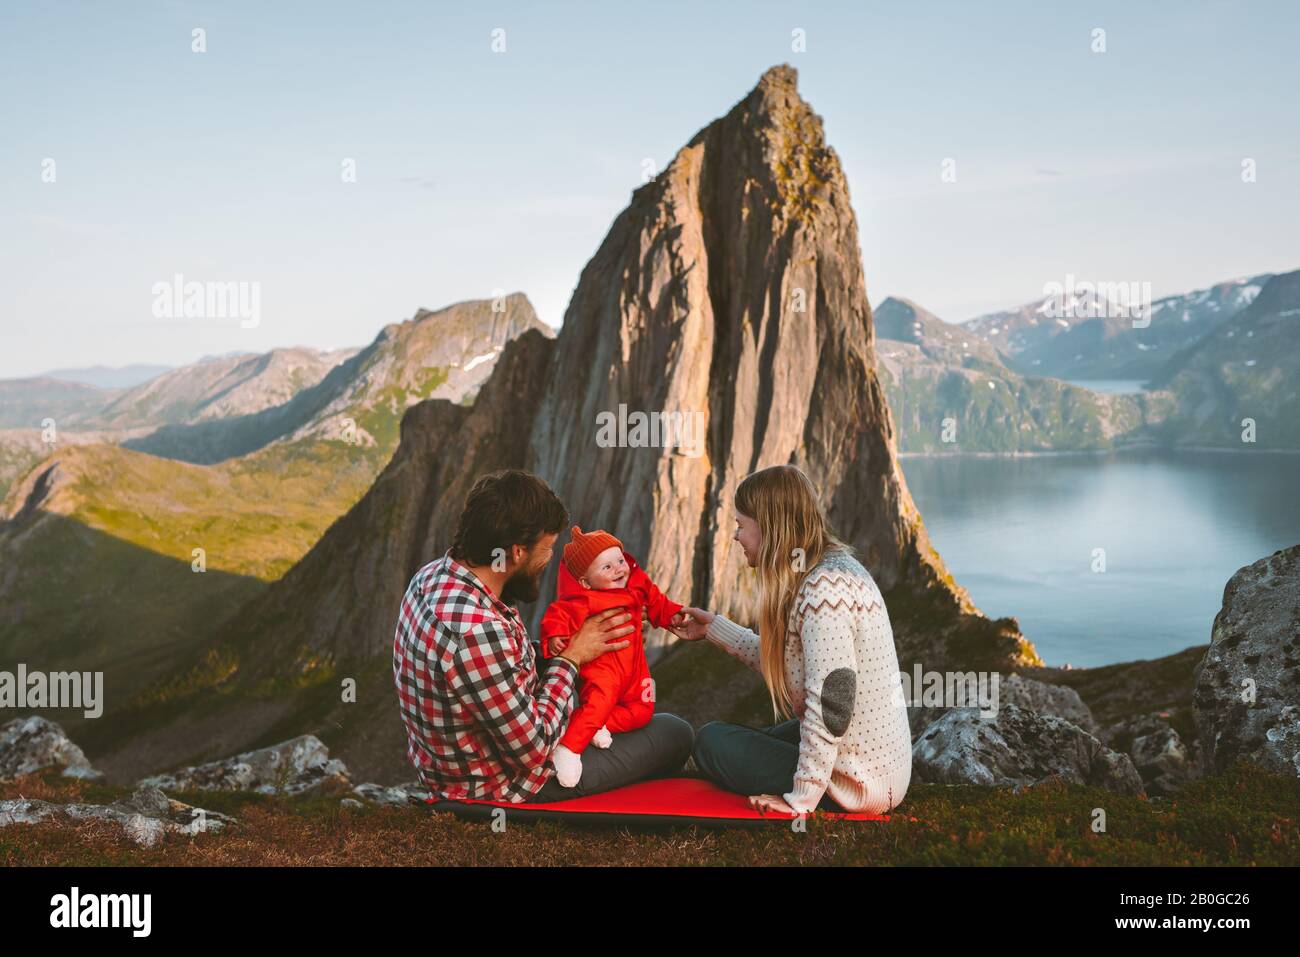 Familienmutter und Vater mit Baby-Reise-Camping in Bergen Abenteuer-Urlaub gesunder Lebensstil Eltern mit Kind in Norwegen Segla Peak-View Sust Stockfoto